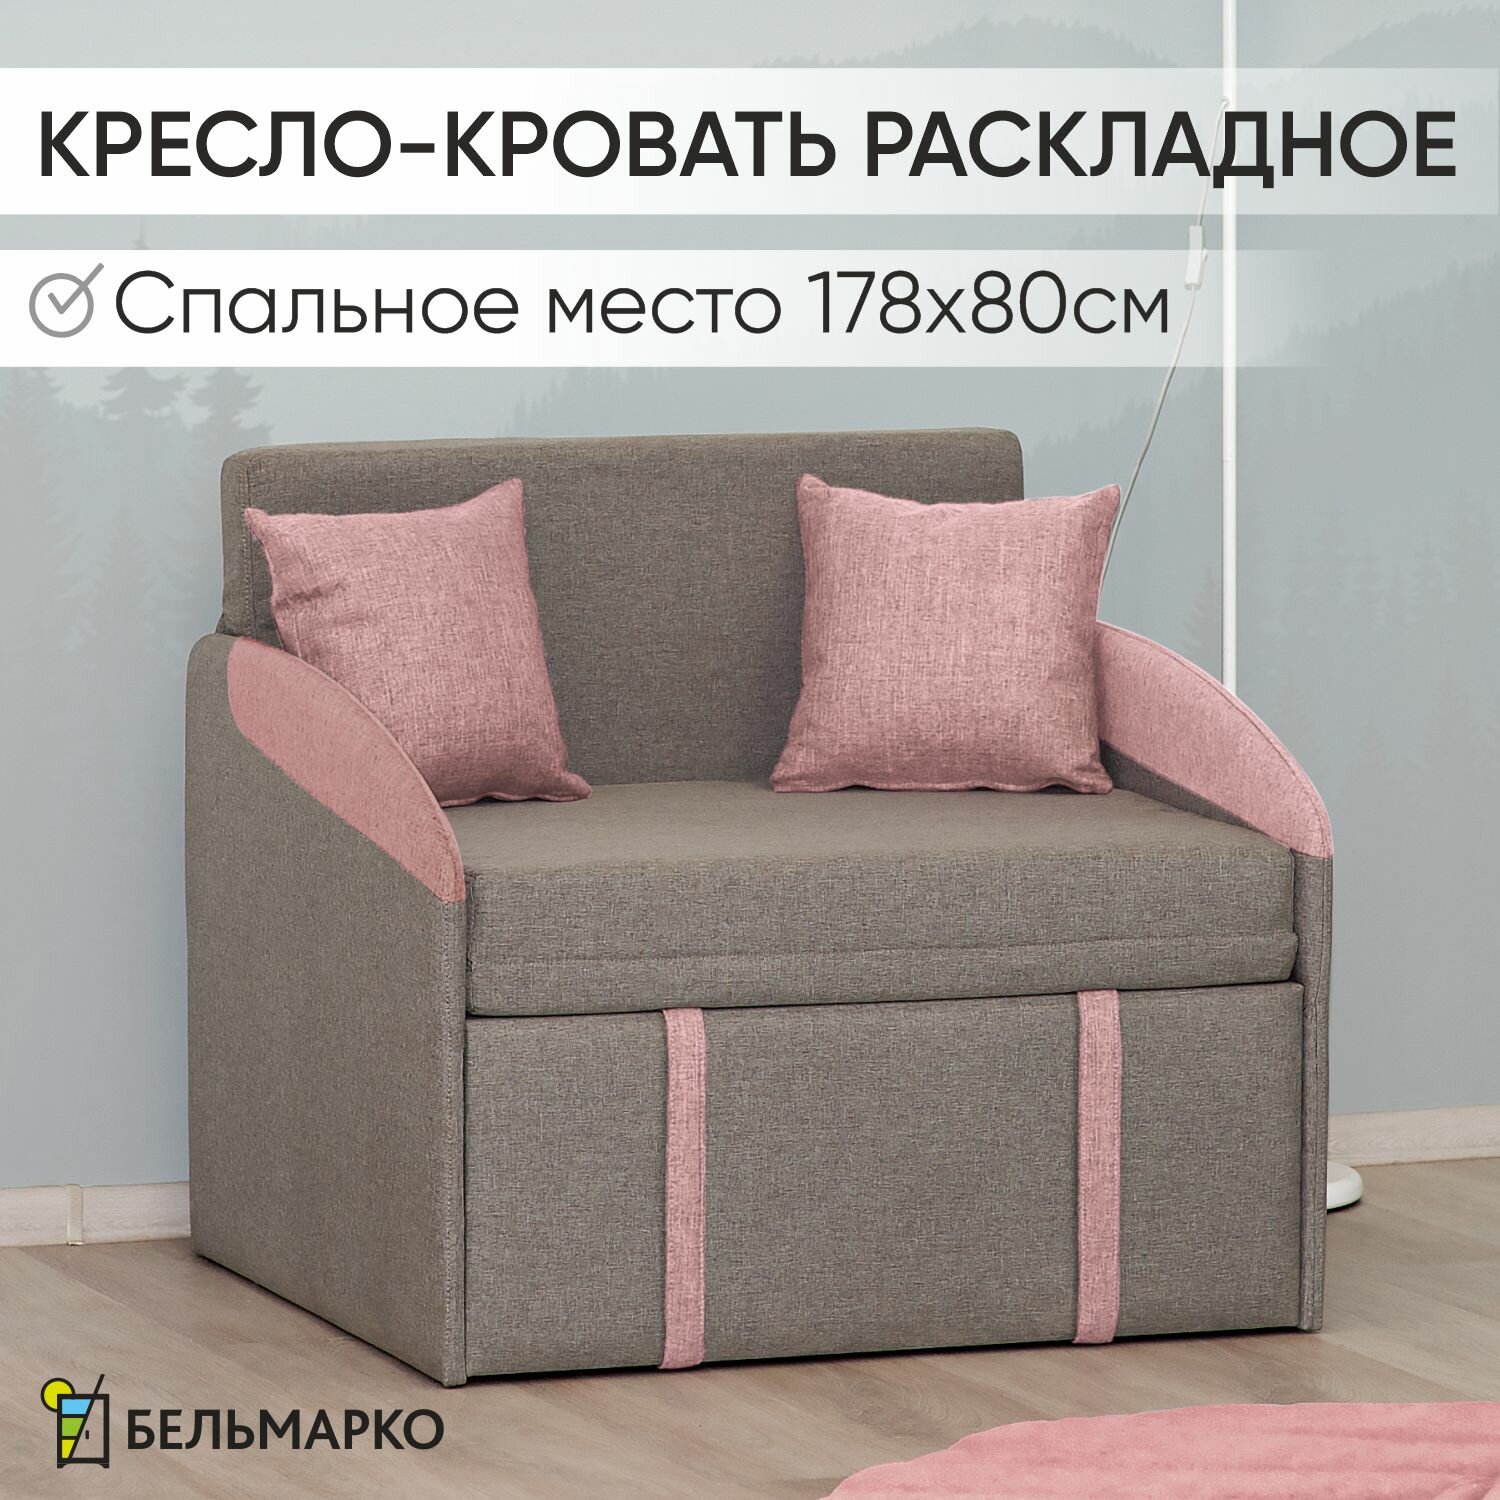 Детское кресло-кровать Polto серо-коричневый/клубничный мусс (рогожка)